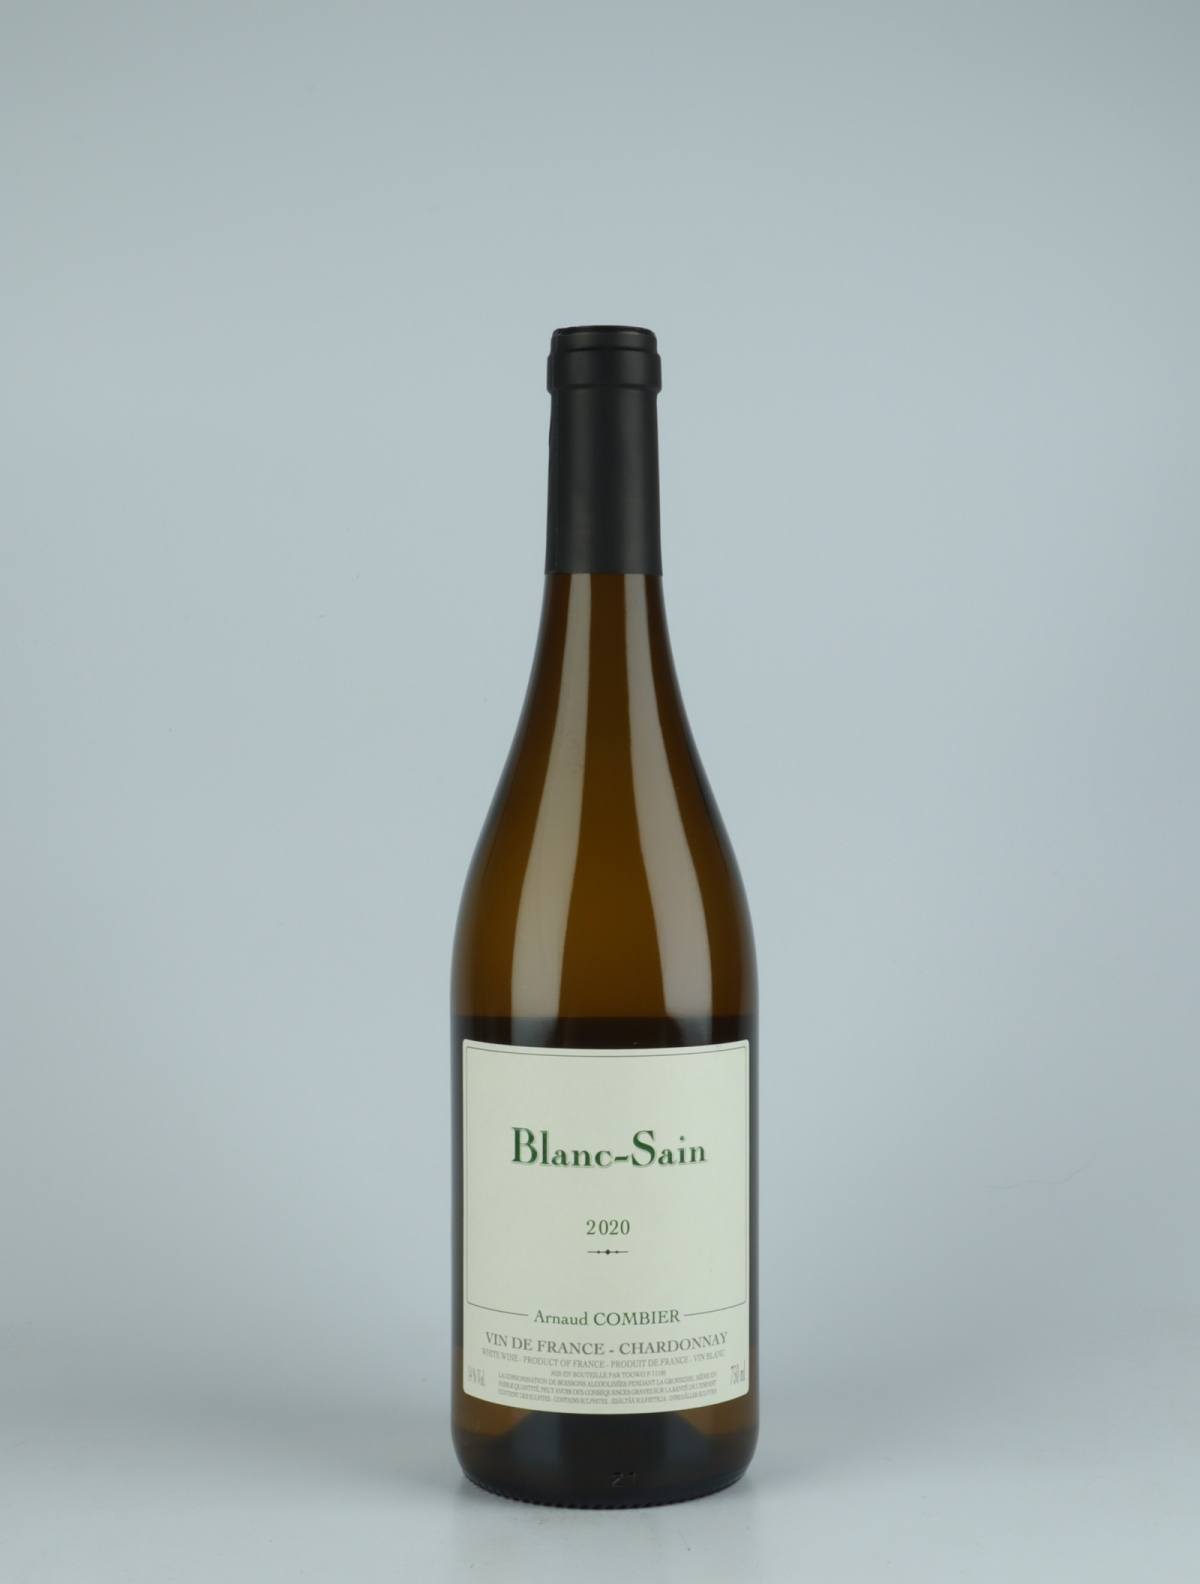 En flaske 2020 Blanc-Sain Hvidvin fra Arnaud Combier, Beaujolais i Frankrig